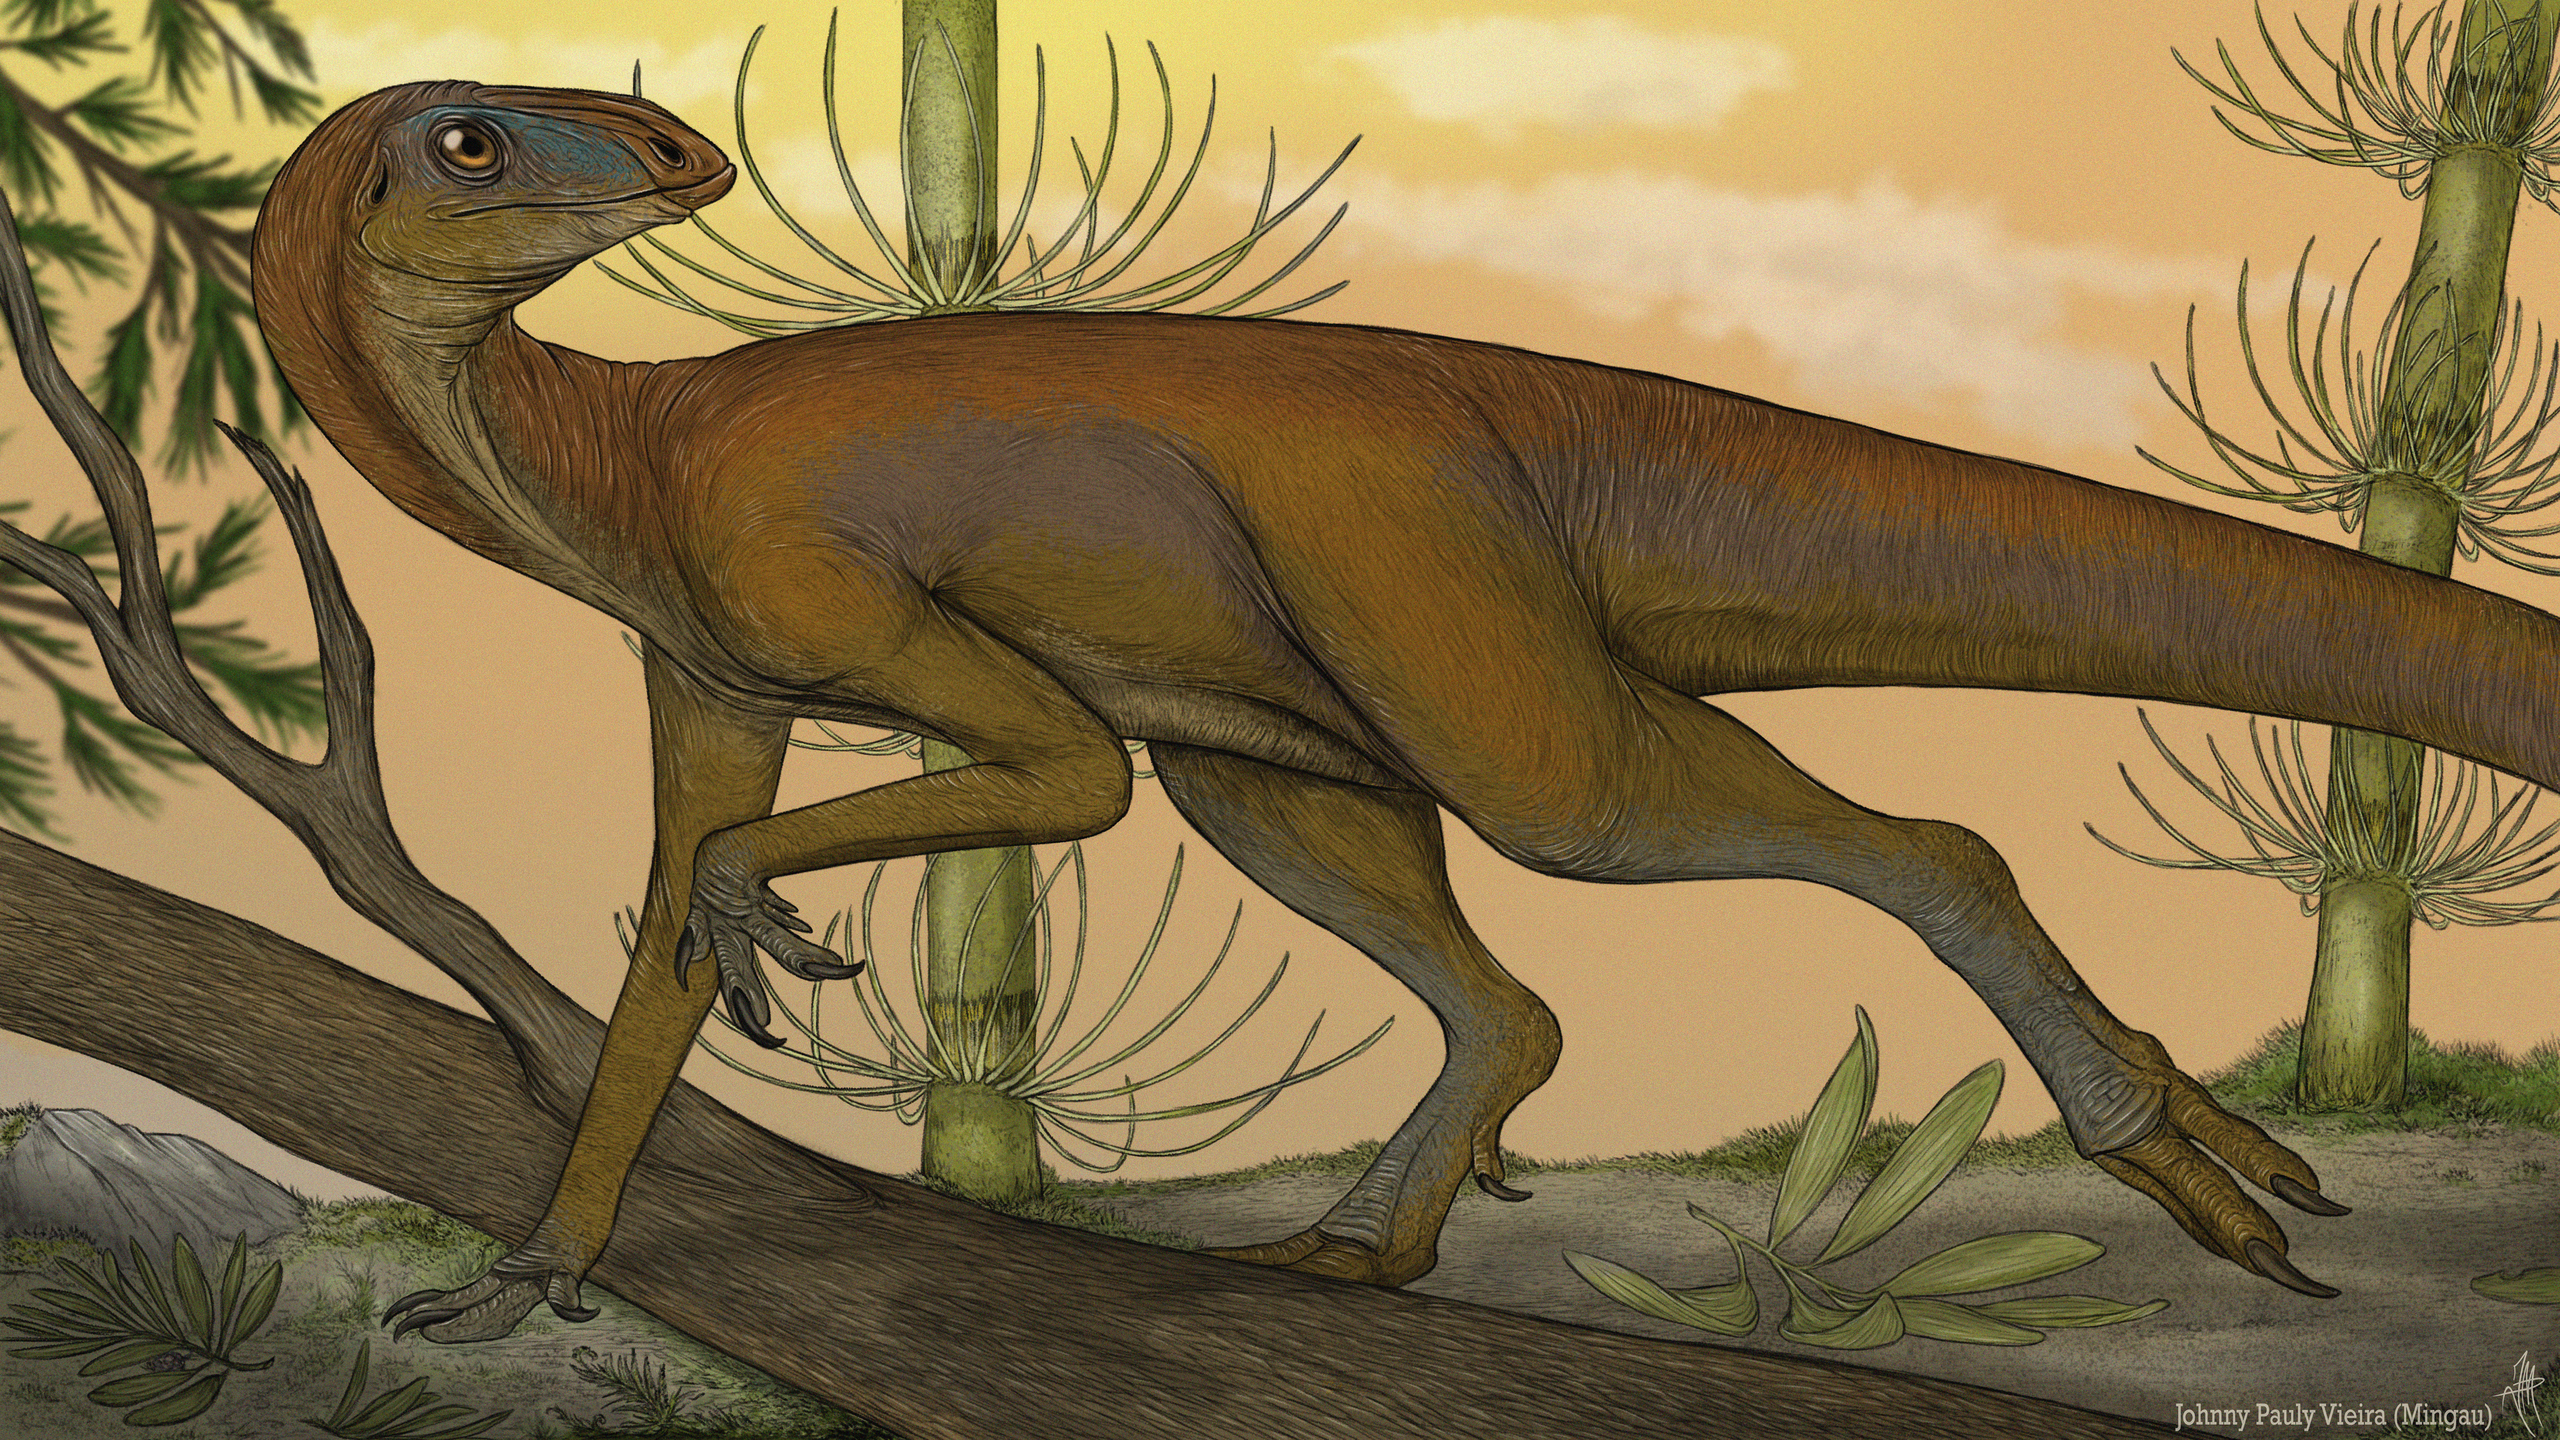 Obrazová rekonstrukce brazilského silesaurida druhu Sacisaurus agudoensis. Tento asi 225 milionů let starý zástupce kladu Sulcimentisauria mohl mít z hlediska vývoje značně blízko k nejstarším ptakopánvým dinosaurům. Kredit: JohnnyMingau; Wikipedia (